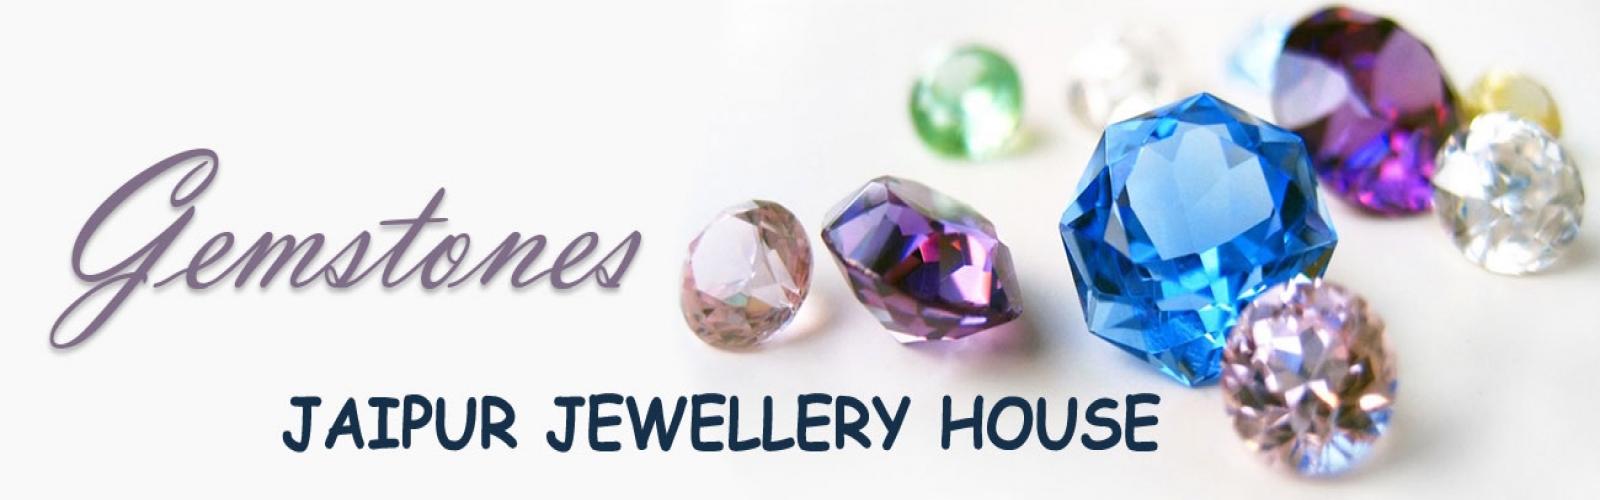 jaipur jewellery house